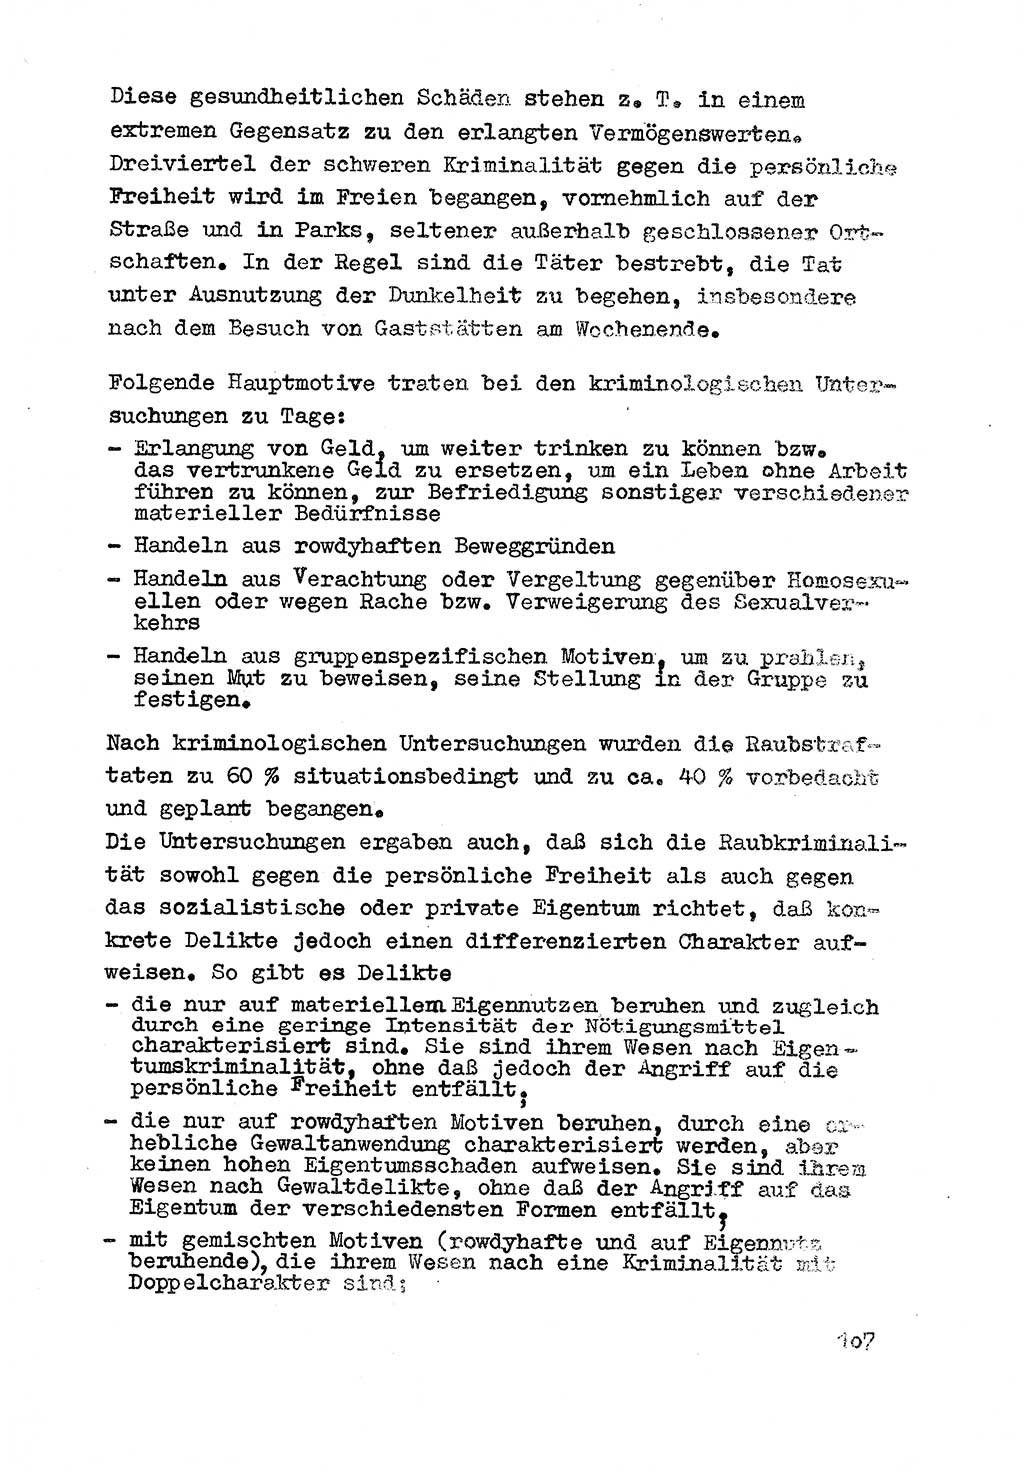 Strafrecht der DDR (Deutsche Demokratische Republik), Besonderer Teil, Lehrmaterial, Heft 3 1969, Seite 107 (Strafr. DDR BT Lehrmat. H. 3 1969, S. 107)